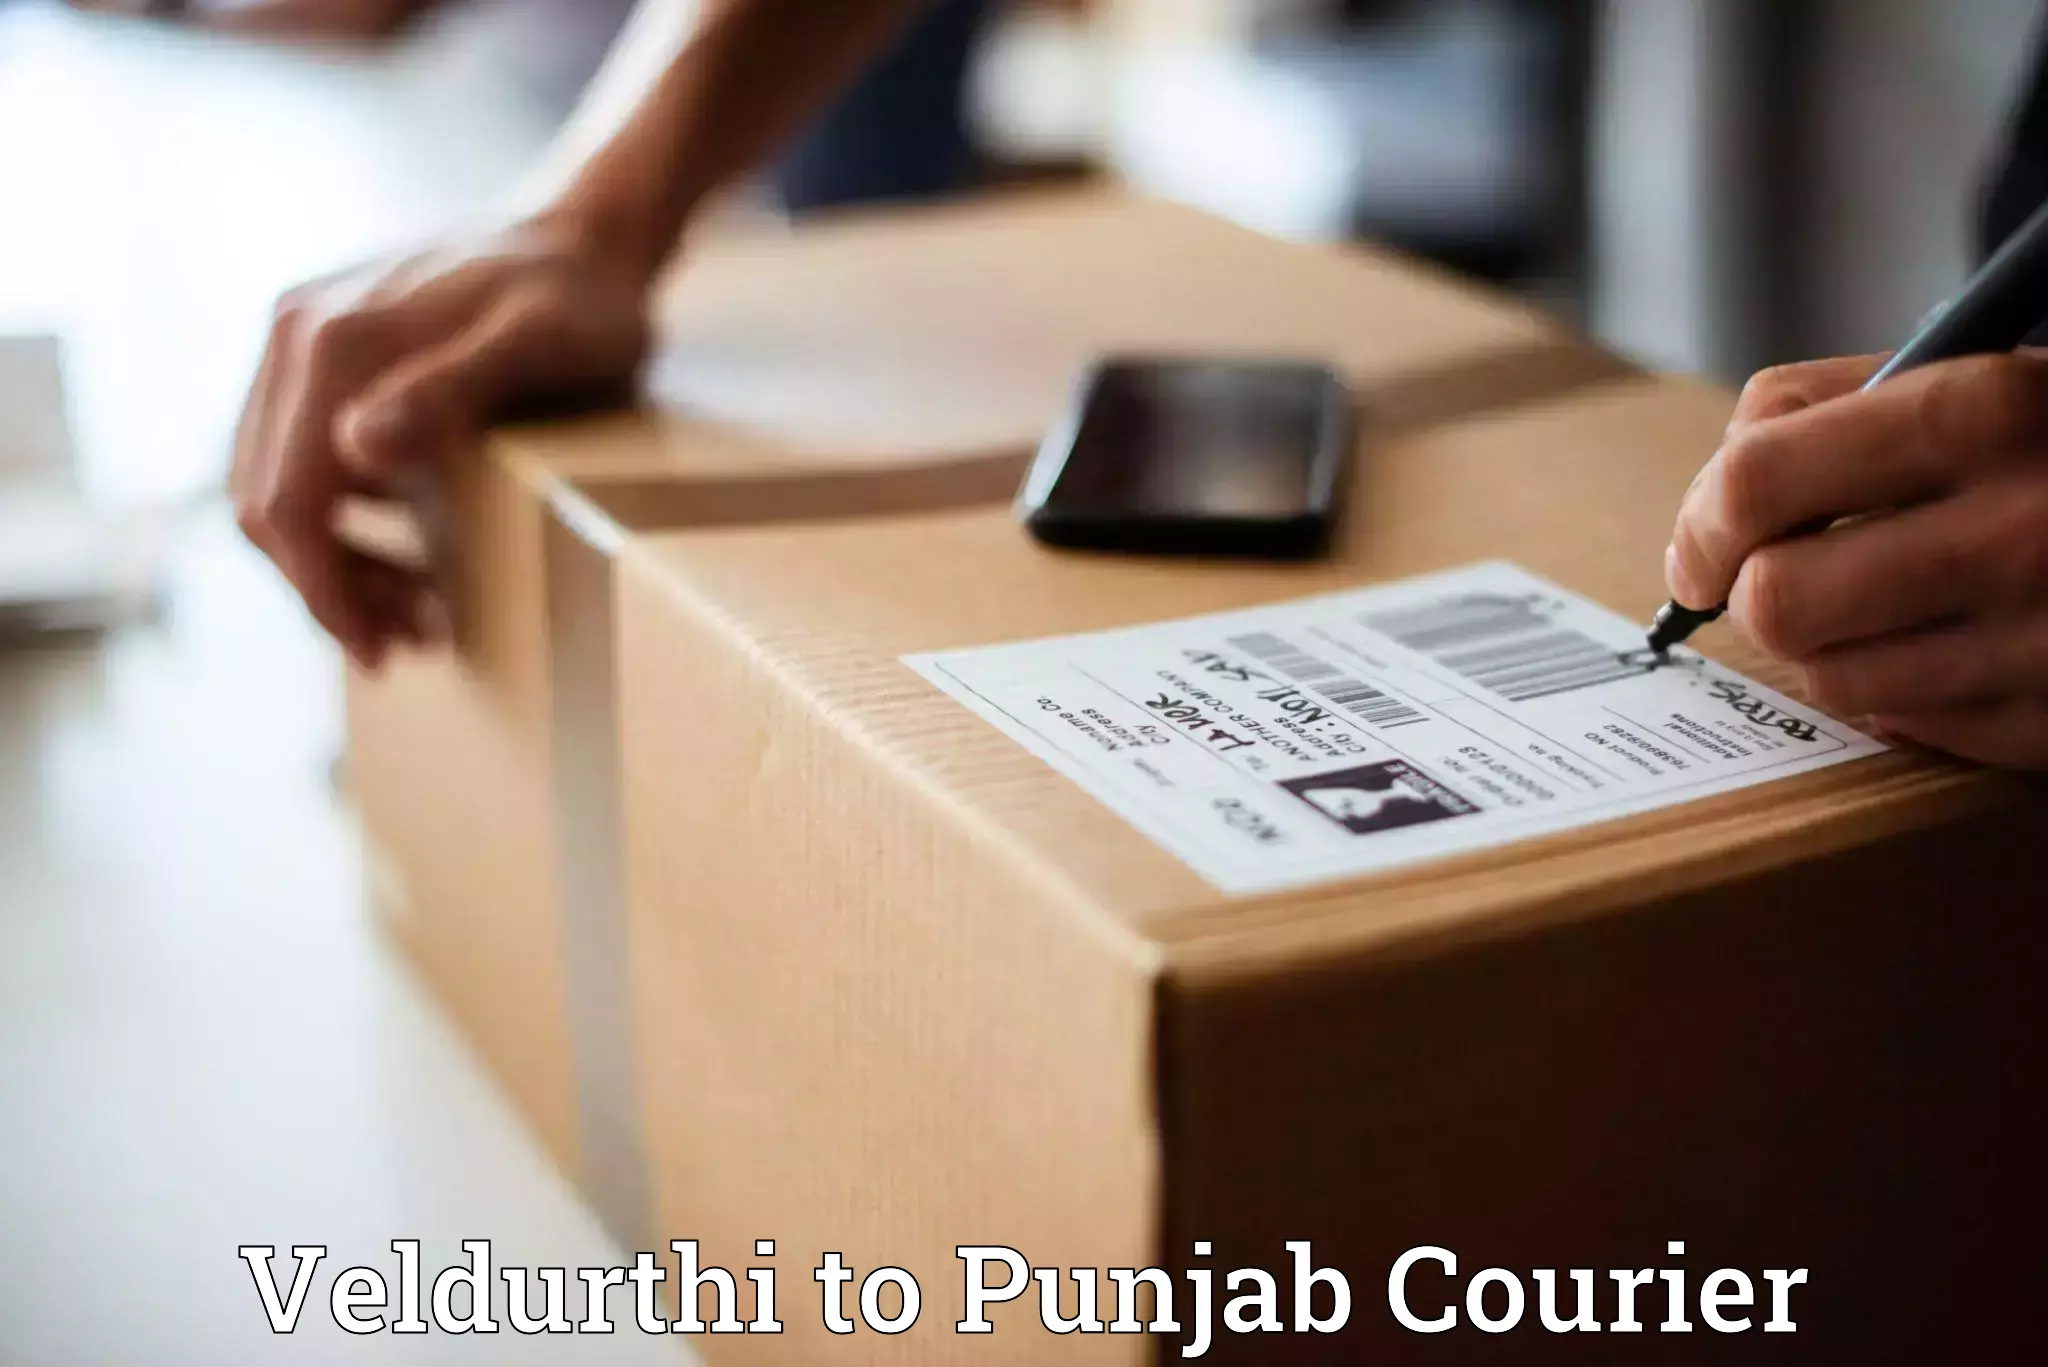 Express delivery solutions Veldurthi to Amritsar